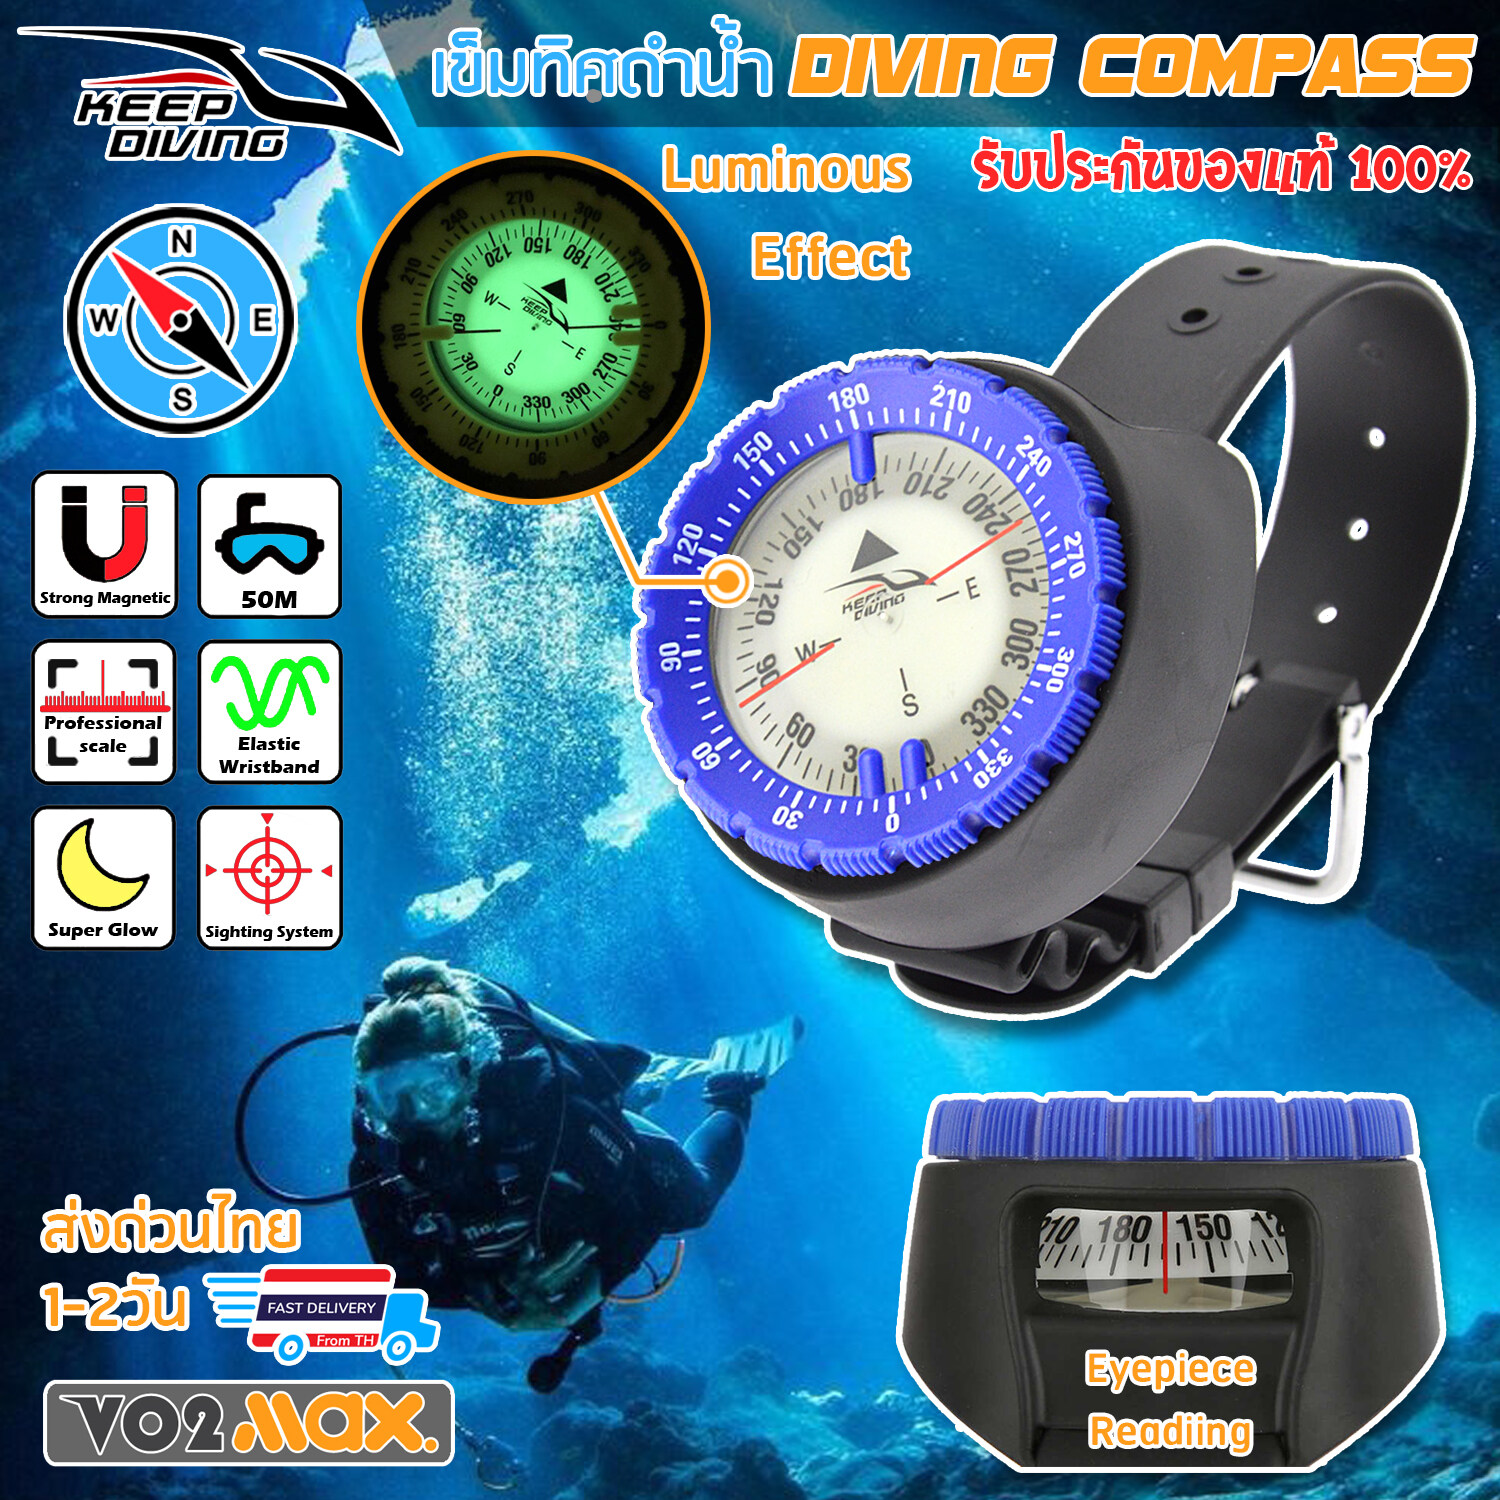 [ส่งด่วนไทย] KEEP DIVING อุปกรณ์ดำน้ำ scuba เข็มทิศ ข้อมือ ดำน้ำ Diving Compass กันน้ำลึก 50M พร้อมพรายน้ำ และช่องมองด้านข้าง ง่ายต่อการอ่าน